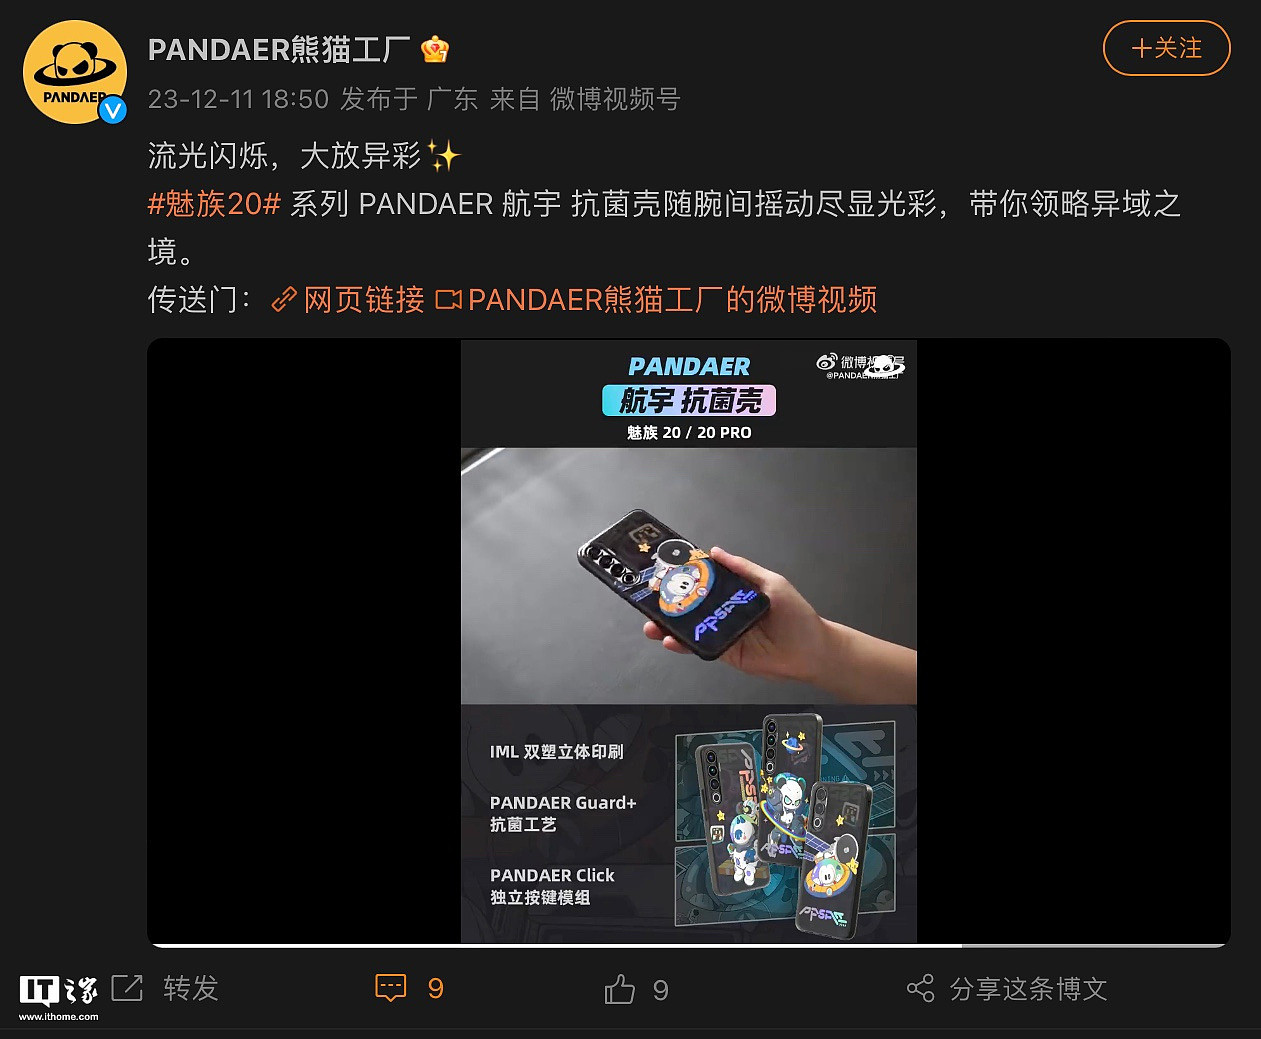 魅族 20 / Pro 系列手机 PANDAER 航宇抗菌壳上架，到手 84 元 - 1